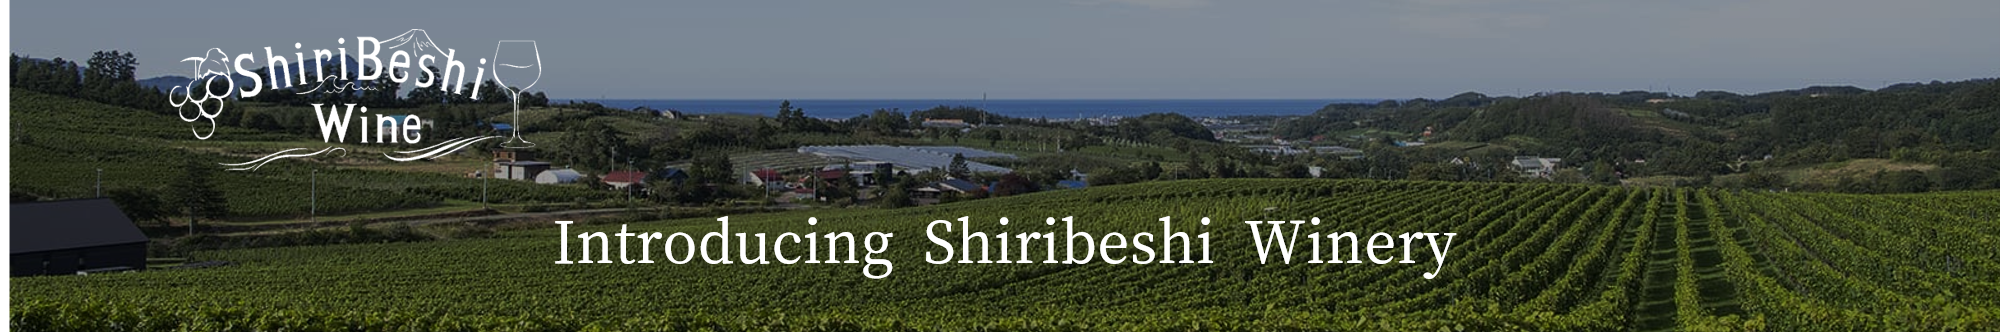 IntroducingShiribeshiWinery.png